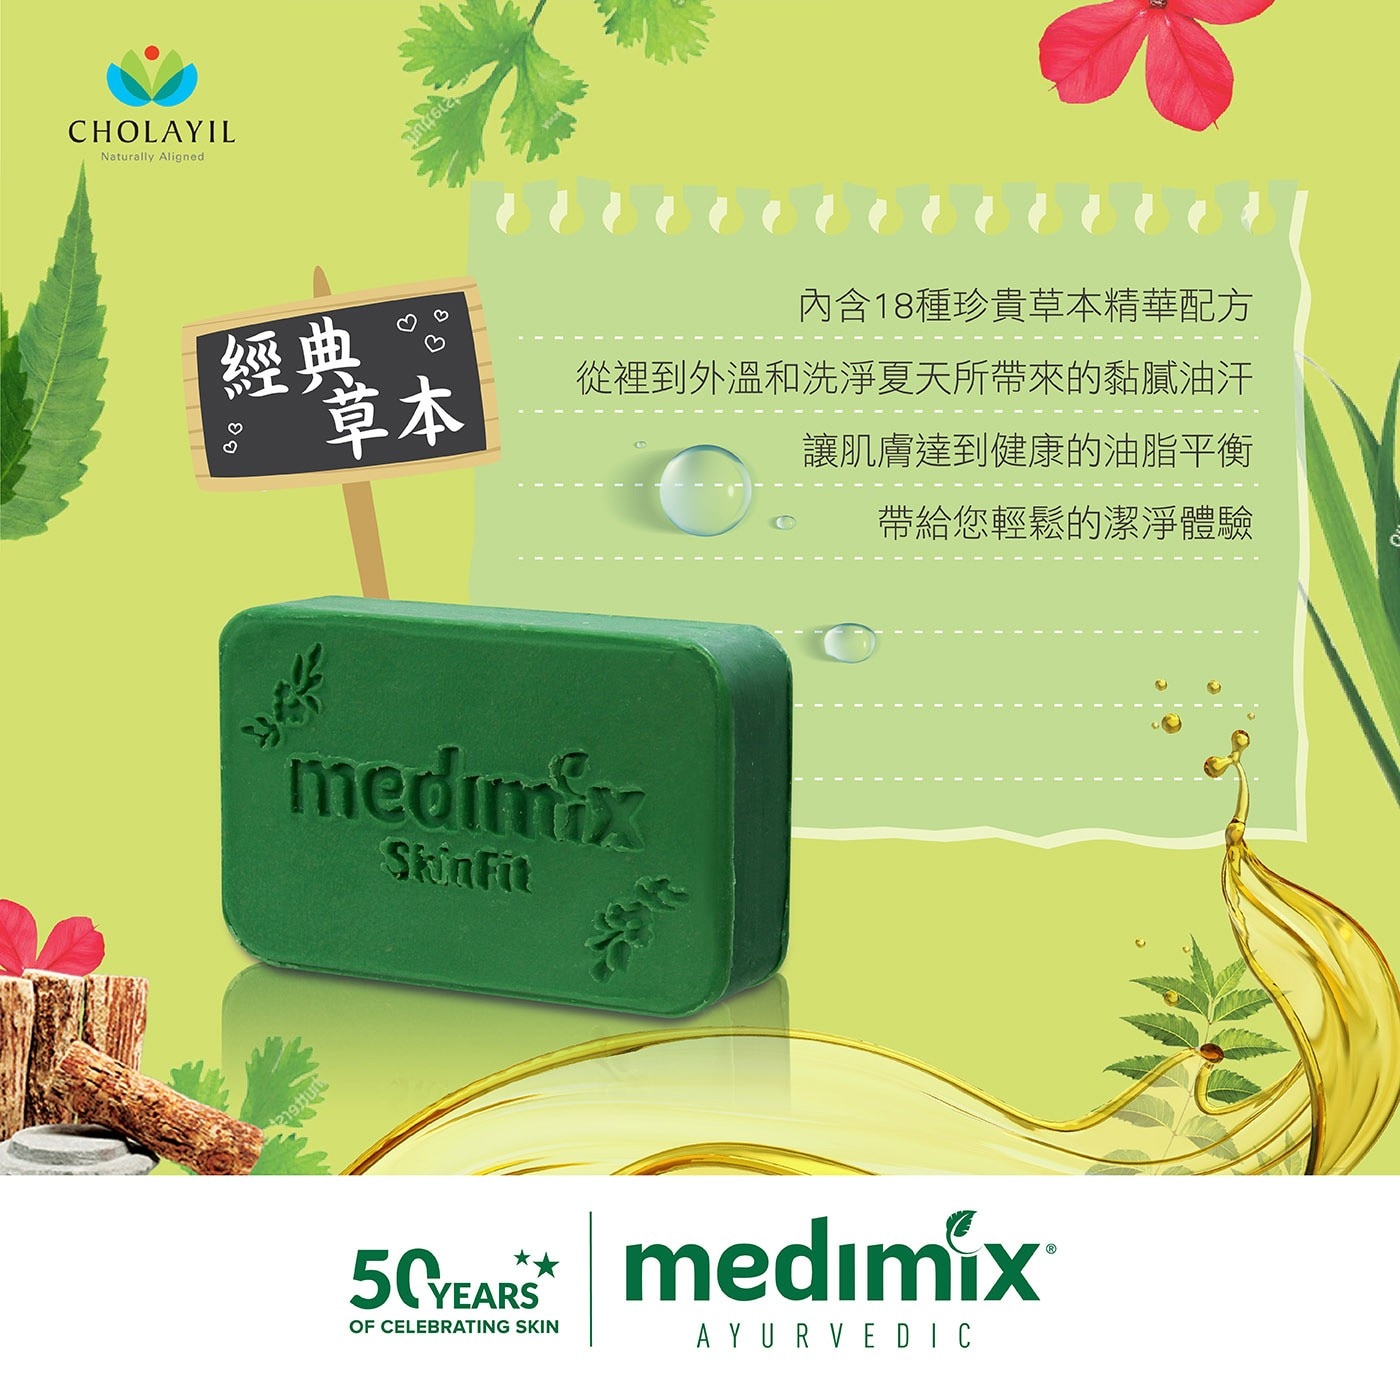 Medimix 印度綠寶石皇室藥草浴美肌皂 內涵18種草本精華配方 讓肌膚達到油脂平衡